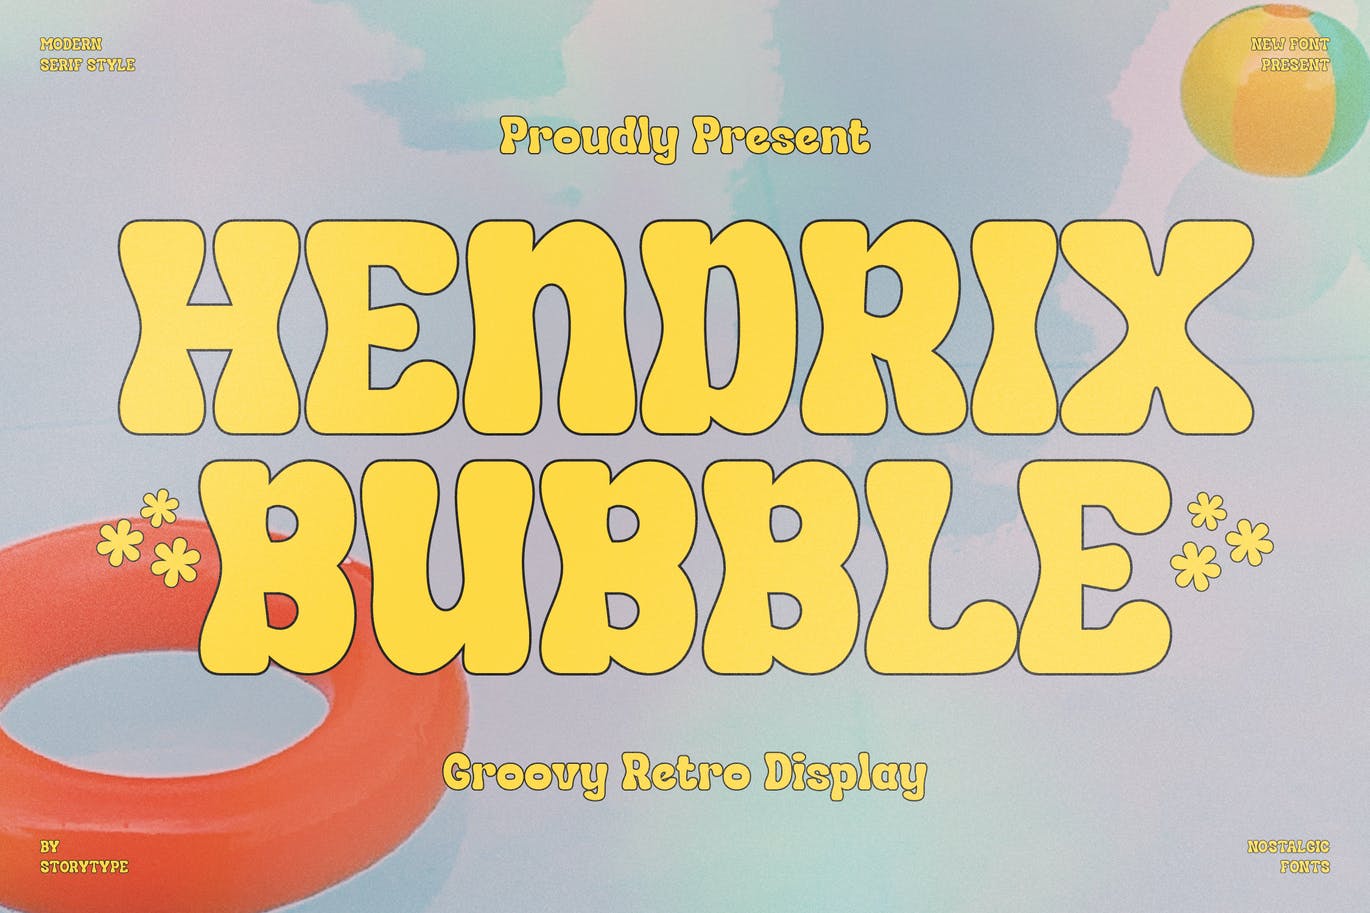 经典复古风格字体素材 Hendrix Bubble Groovy Retro Display 设计素材 第7张